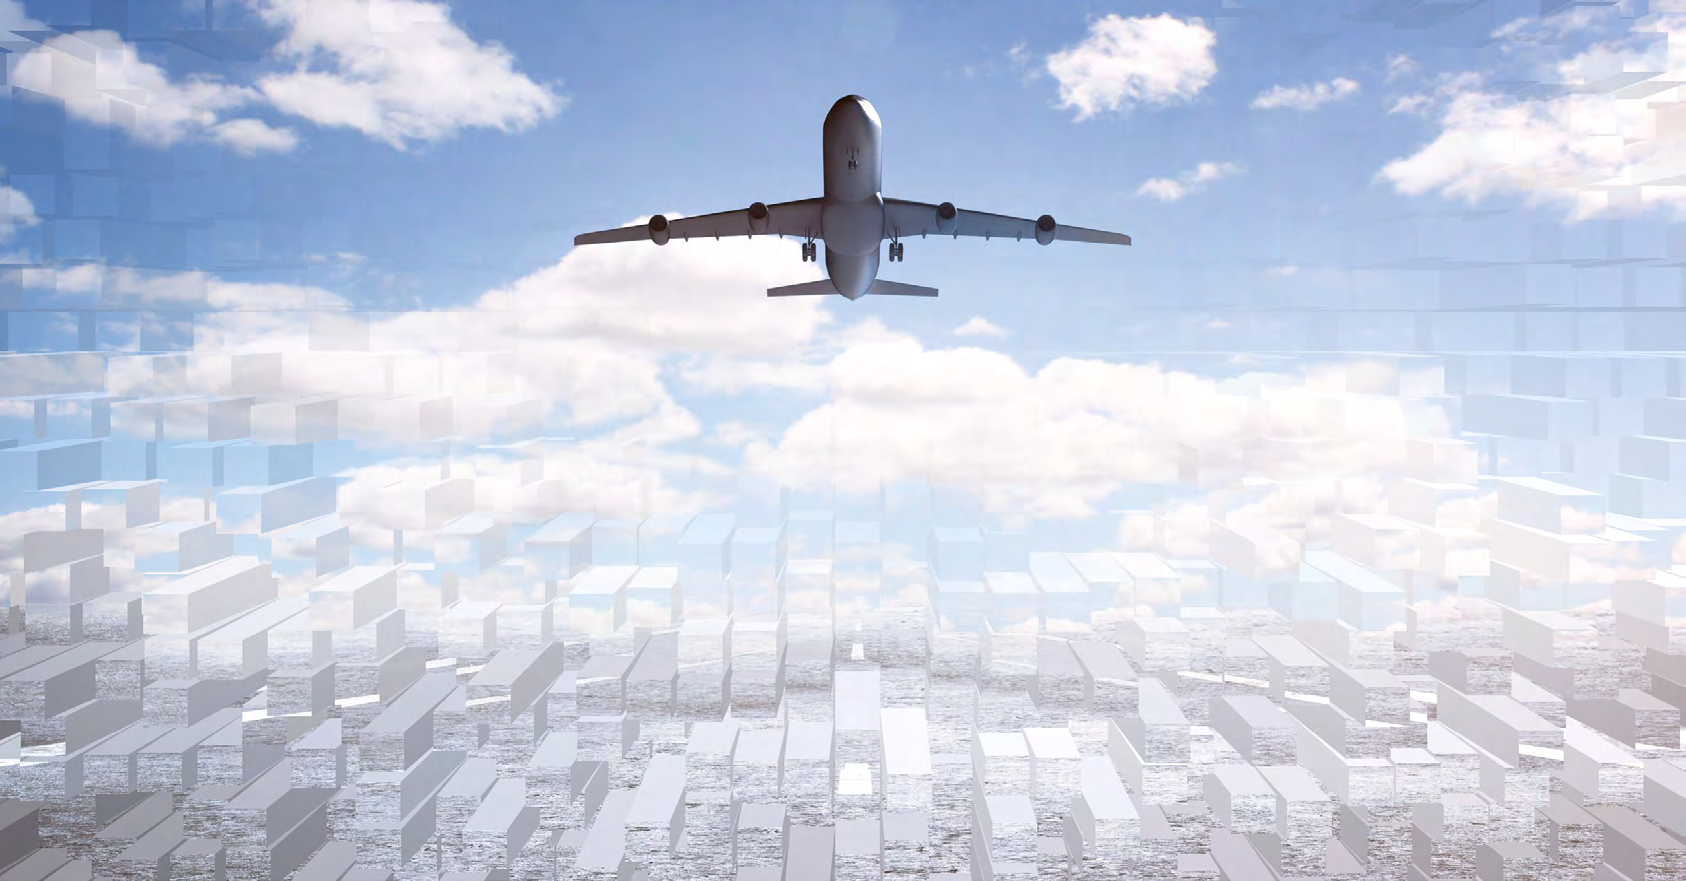 Digital Aviation Virtual und Augmented Reality, Big Data Analytics, künstliche Intelligenz und digitale Services die konservative Luftfahrtbranche entdeckt die Möglichkeiten der Digitalisierung.